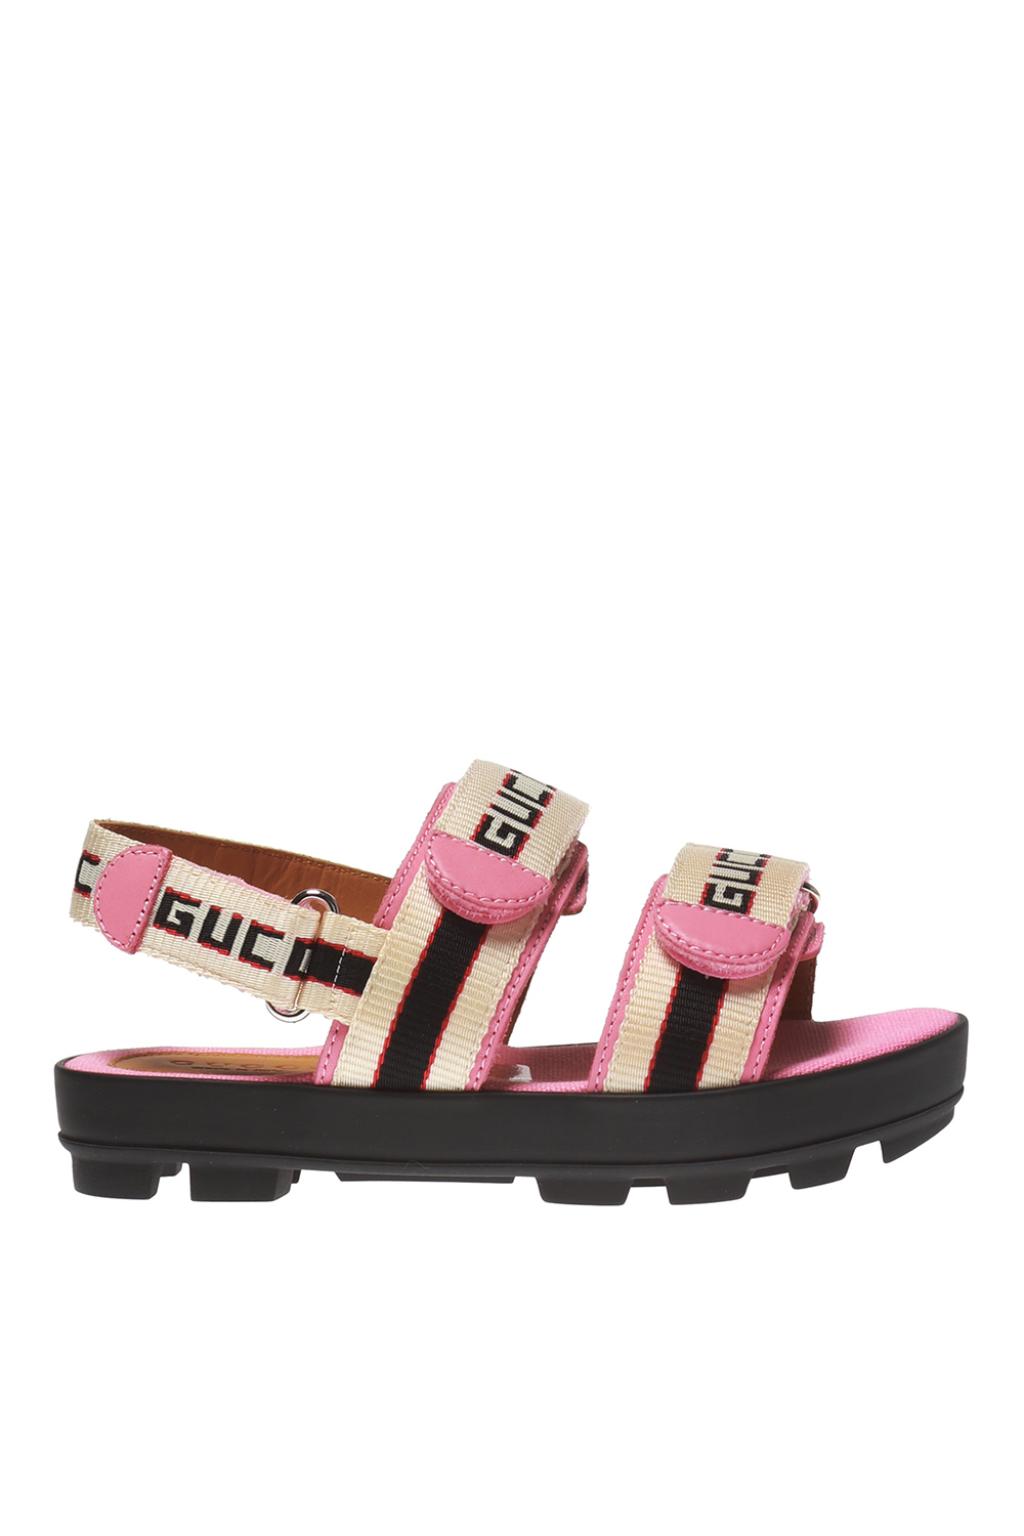 gucci sandal kids